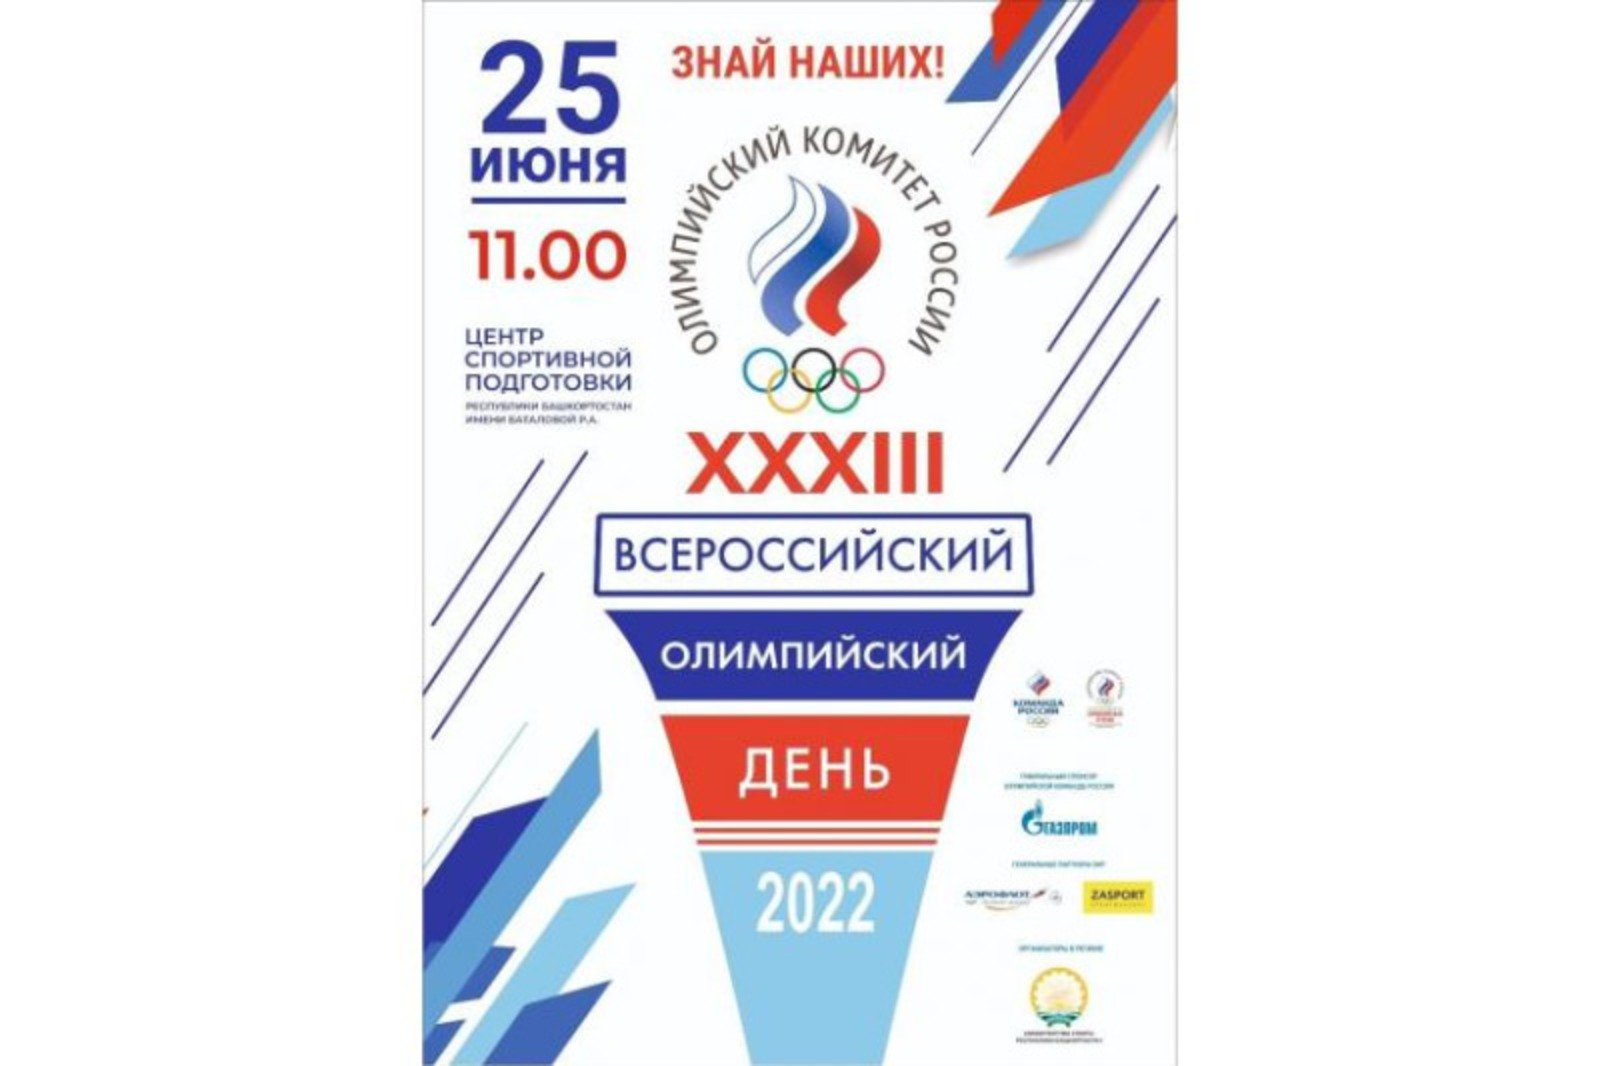 В Уфе состоится фестиваль «XXXIII Всероссийский олимпийский день»